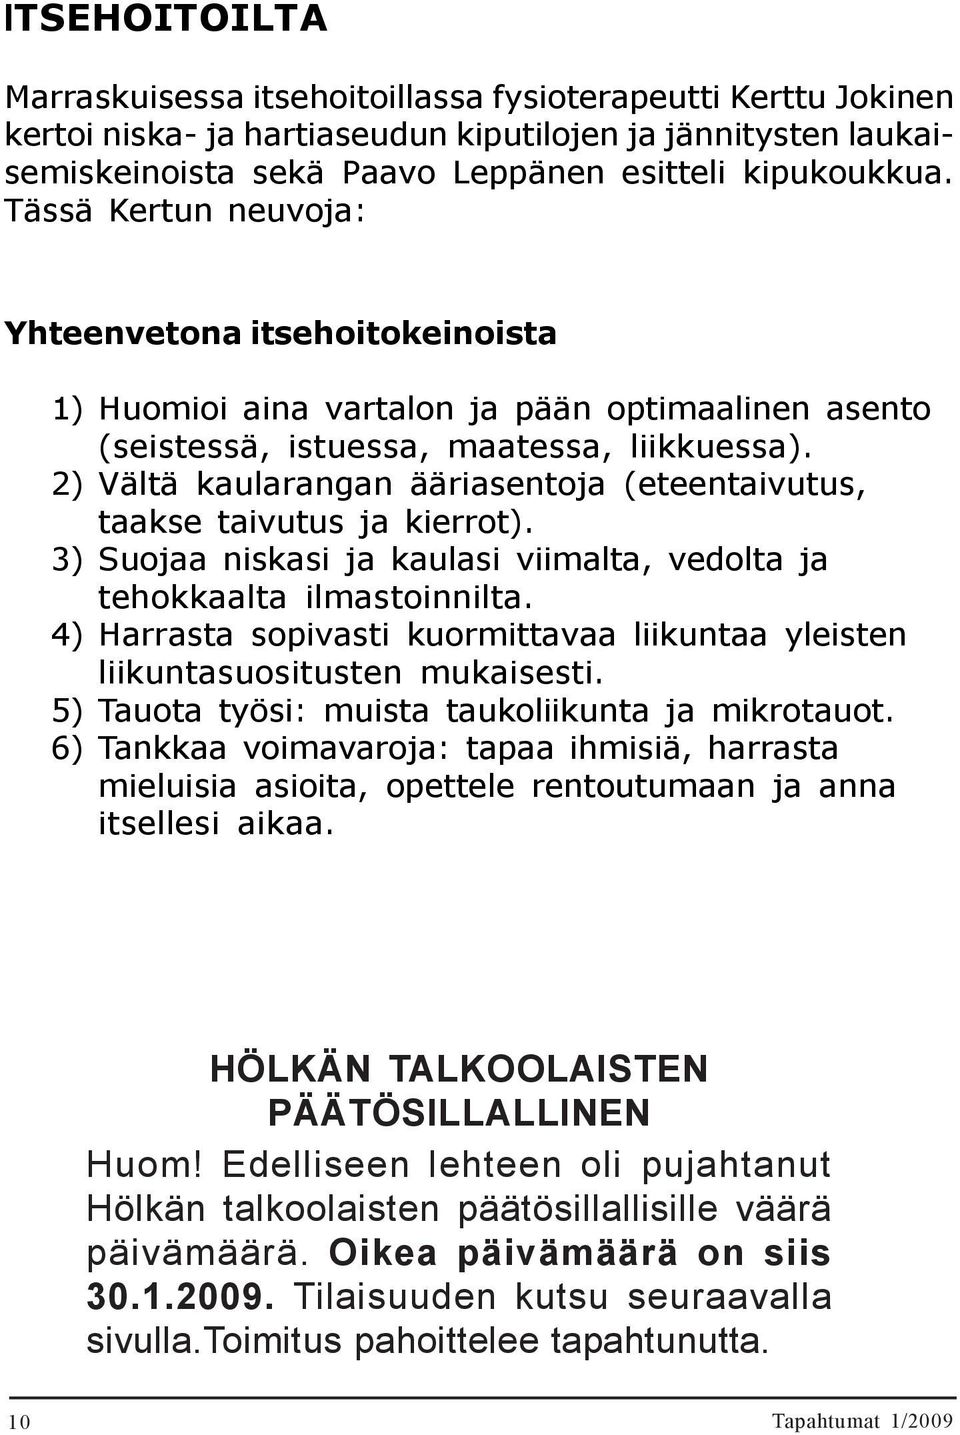 itsehoitoillassa fysioterapeutti Kerttu Jokinen kertoi niska- ja hartiaseudun kiputilojen ja jännitysten laukaisemiskeinoista sekä Paavo Leppänen esitteli kipukoukkua. 23.09.